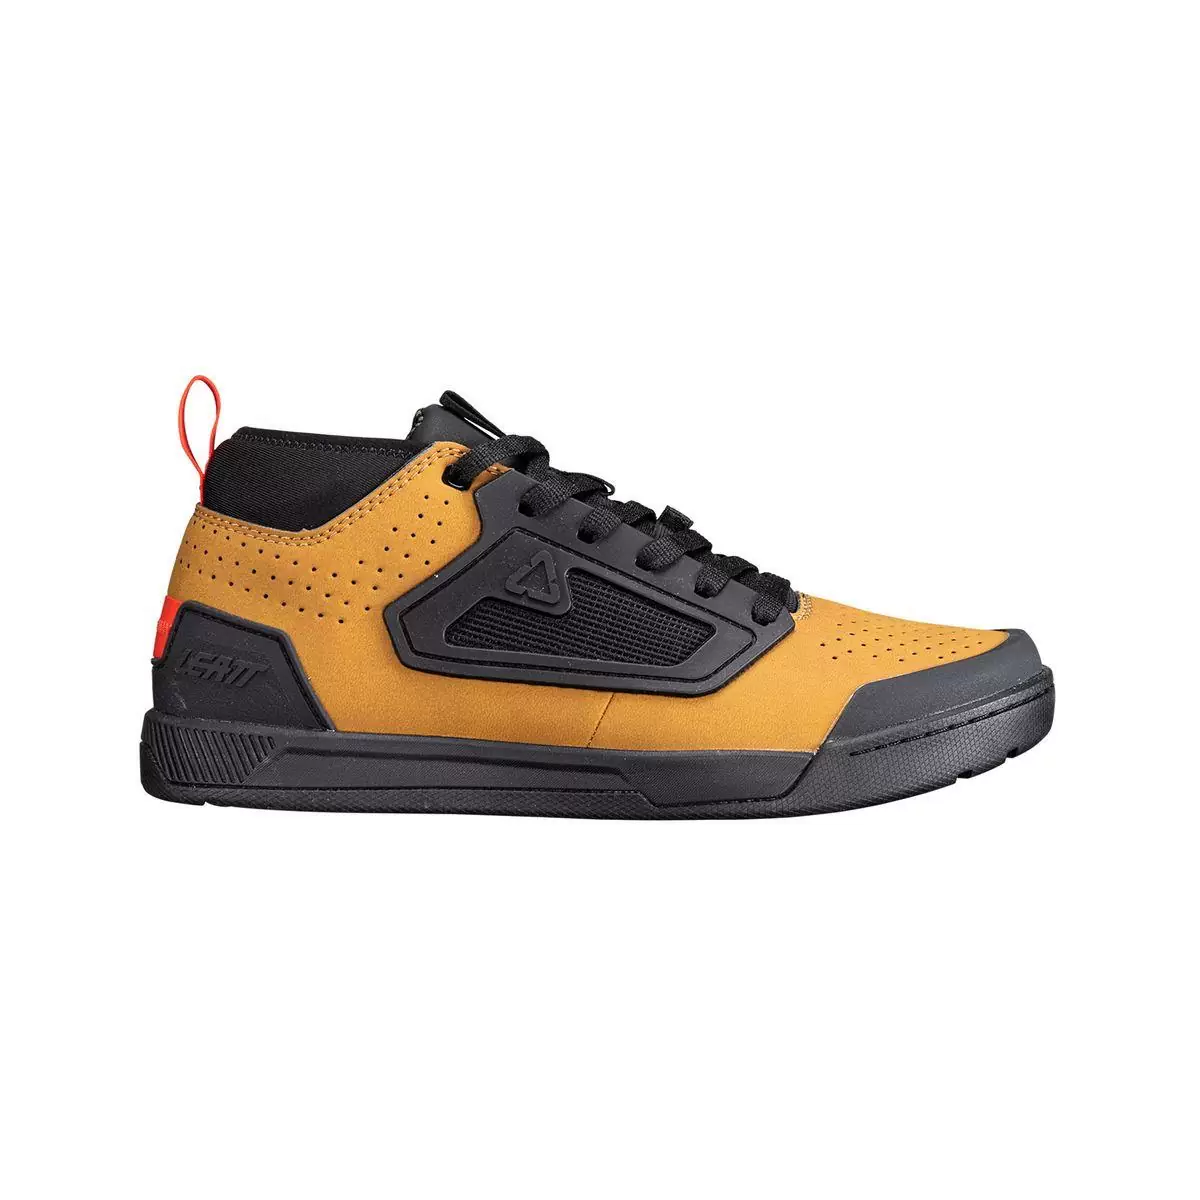 Chaussures VTT Flat 3.0 marron/noir taille 44,5 #1